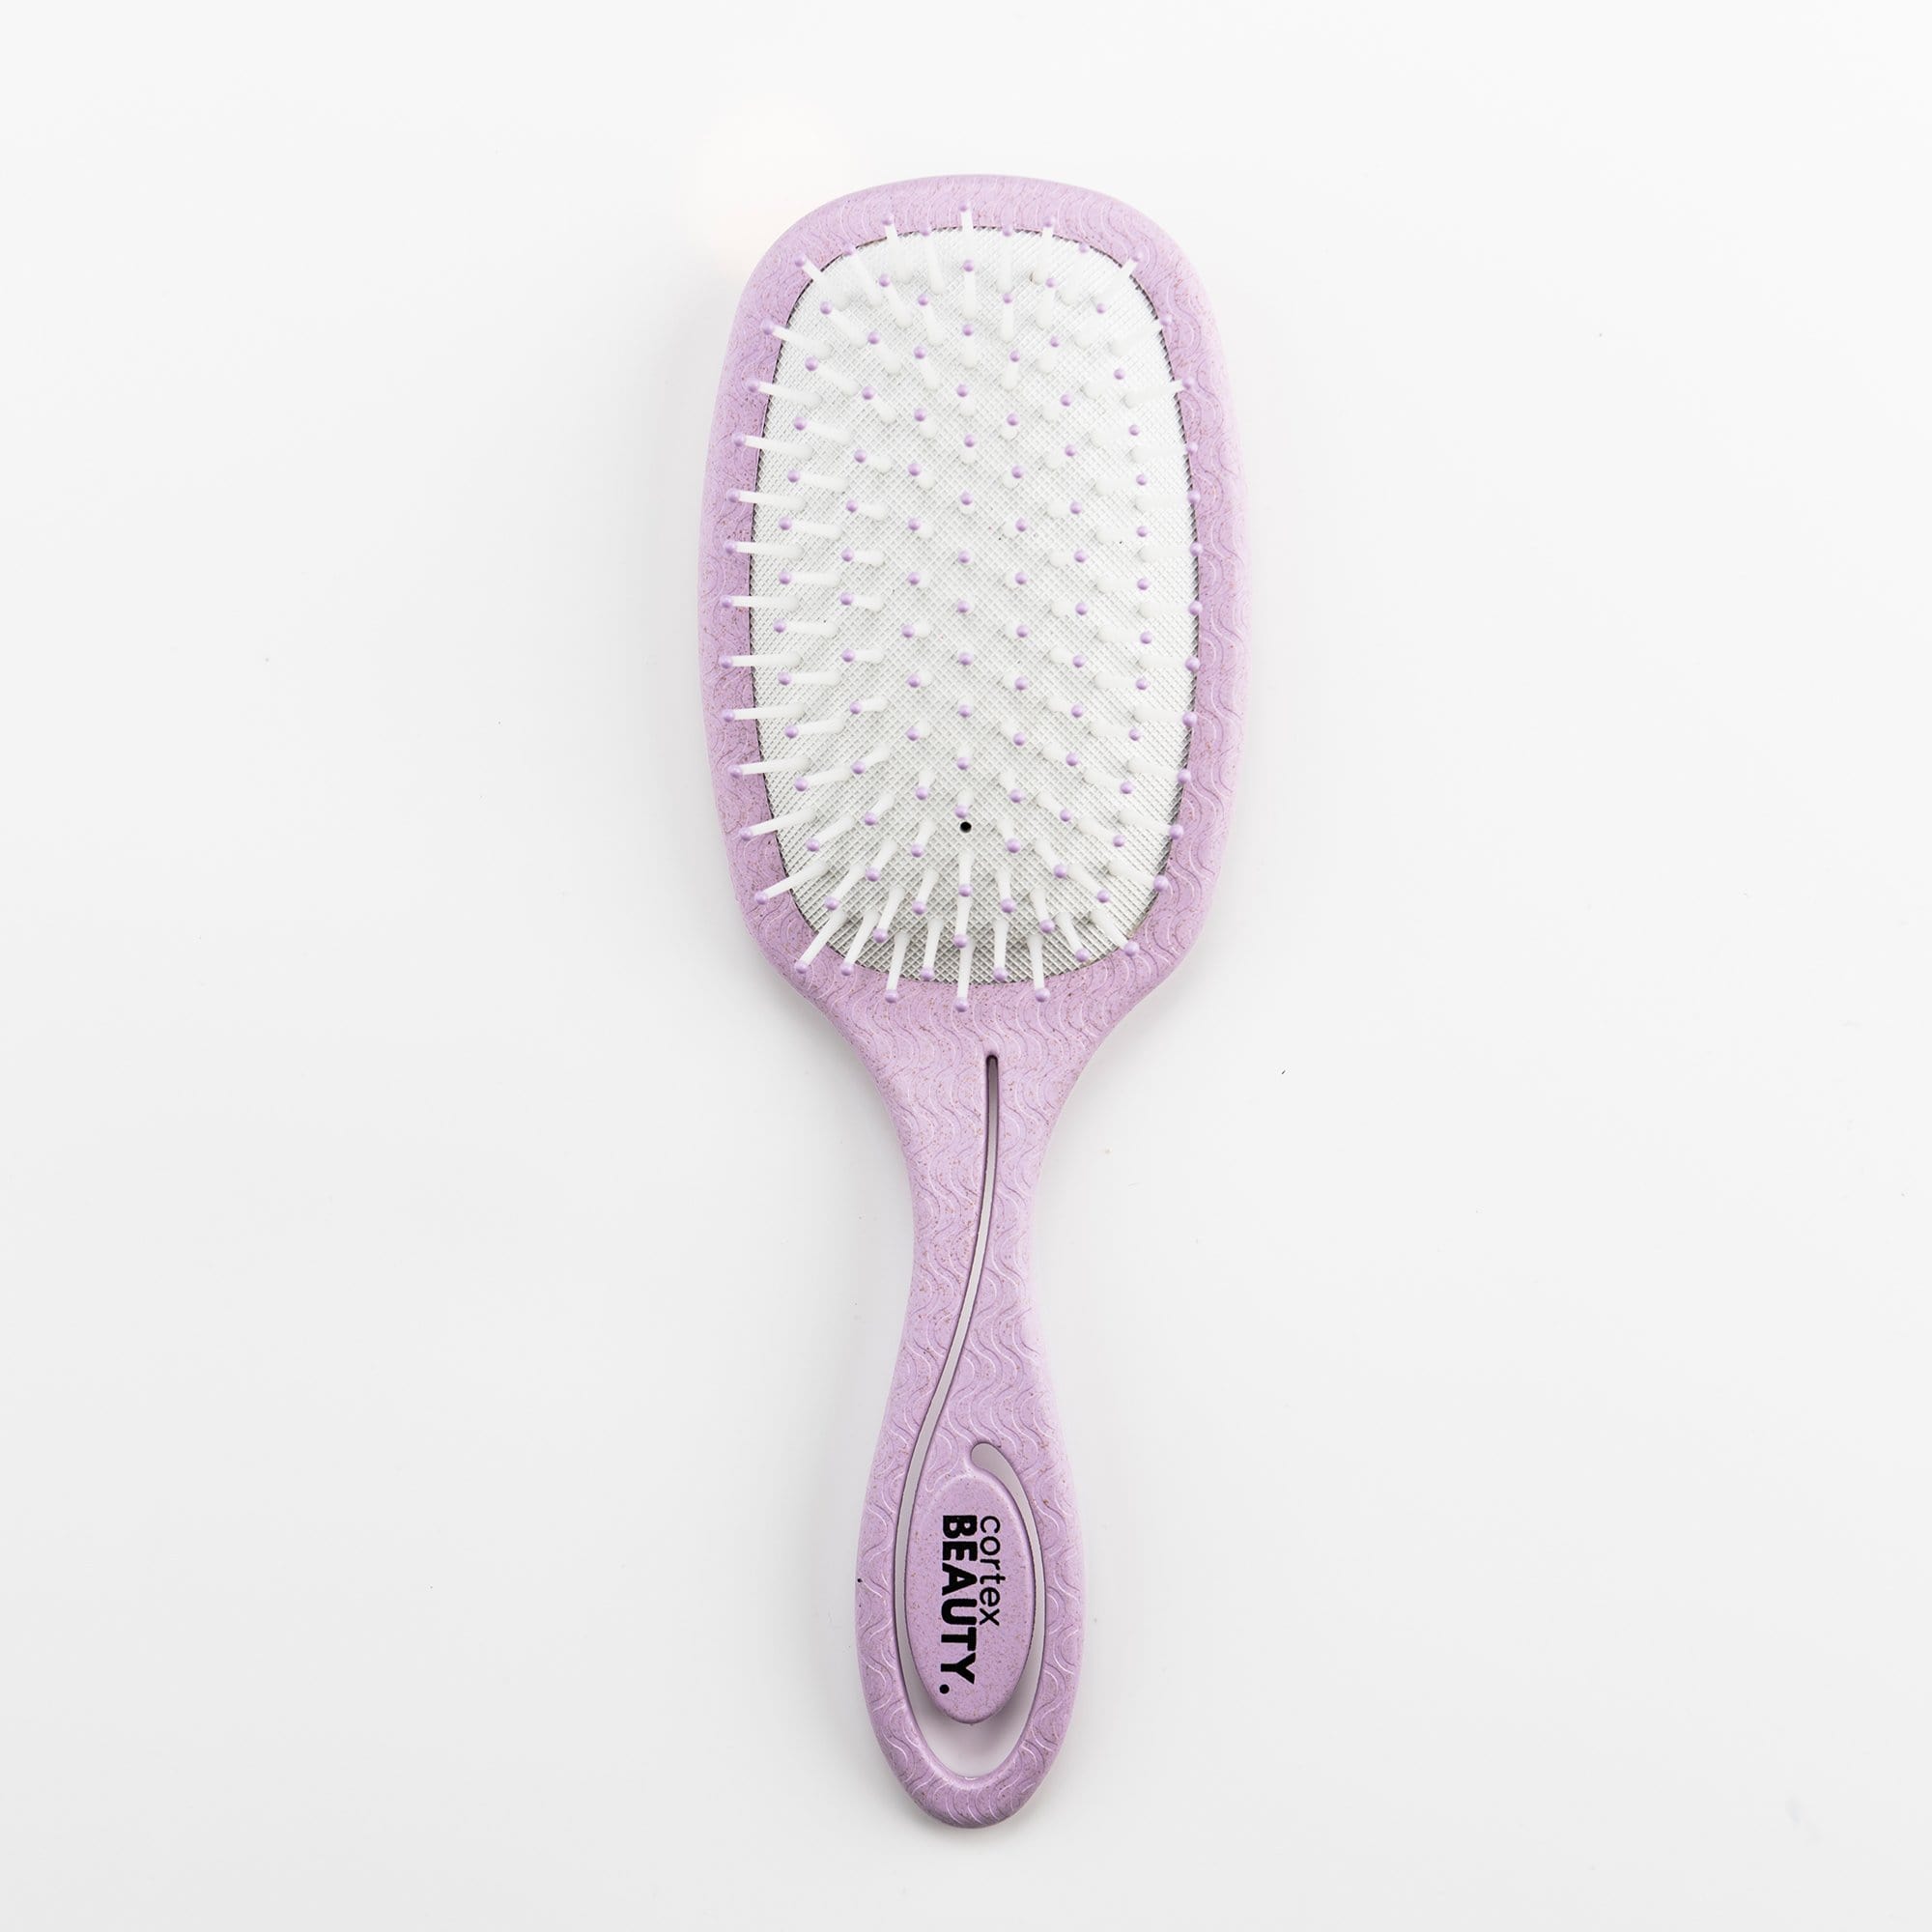 Cortex Beauty Eco-Friendly Paddle Cushion Brush